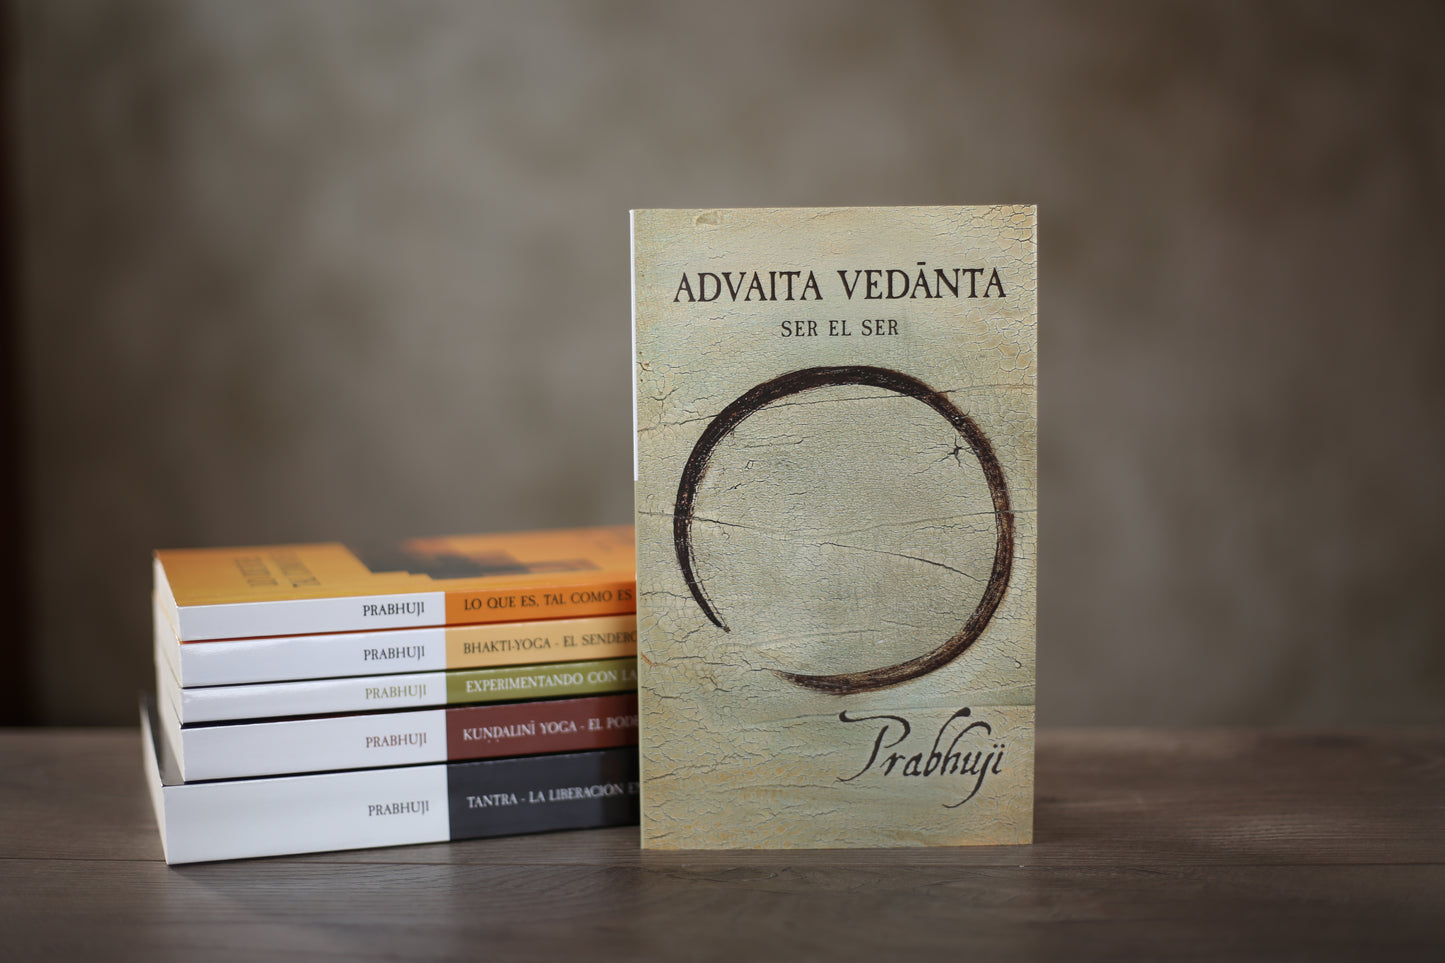 Book Advaita Vedanta - Ser el ser con Prabhuji (Paperback - Spanish)